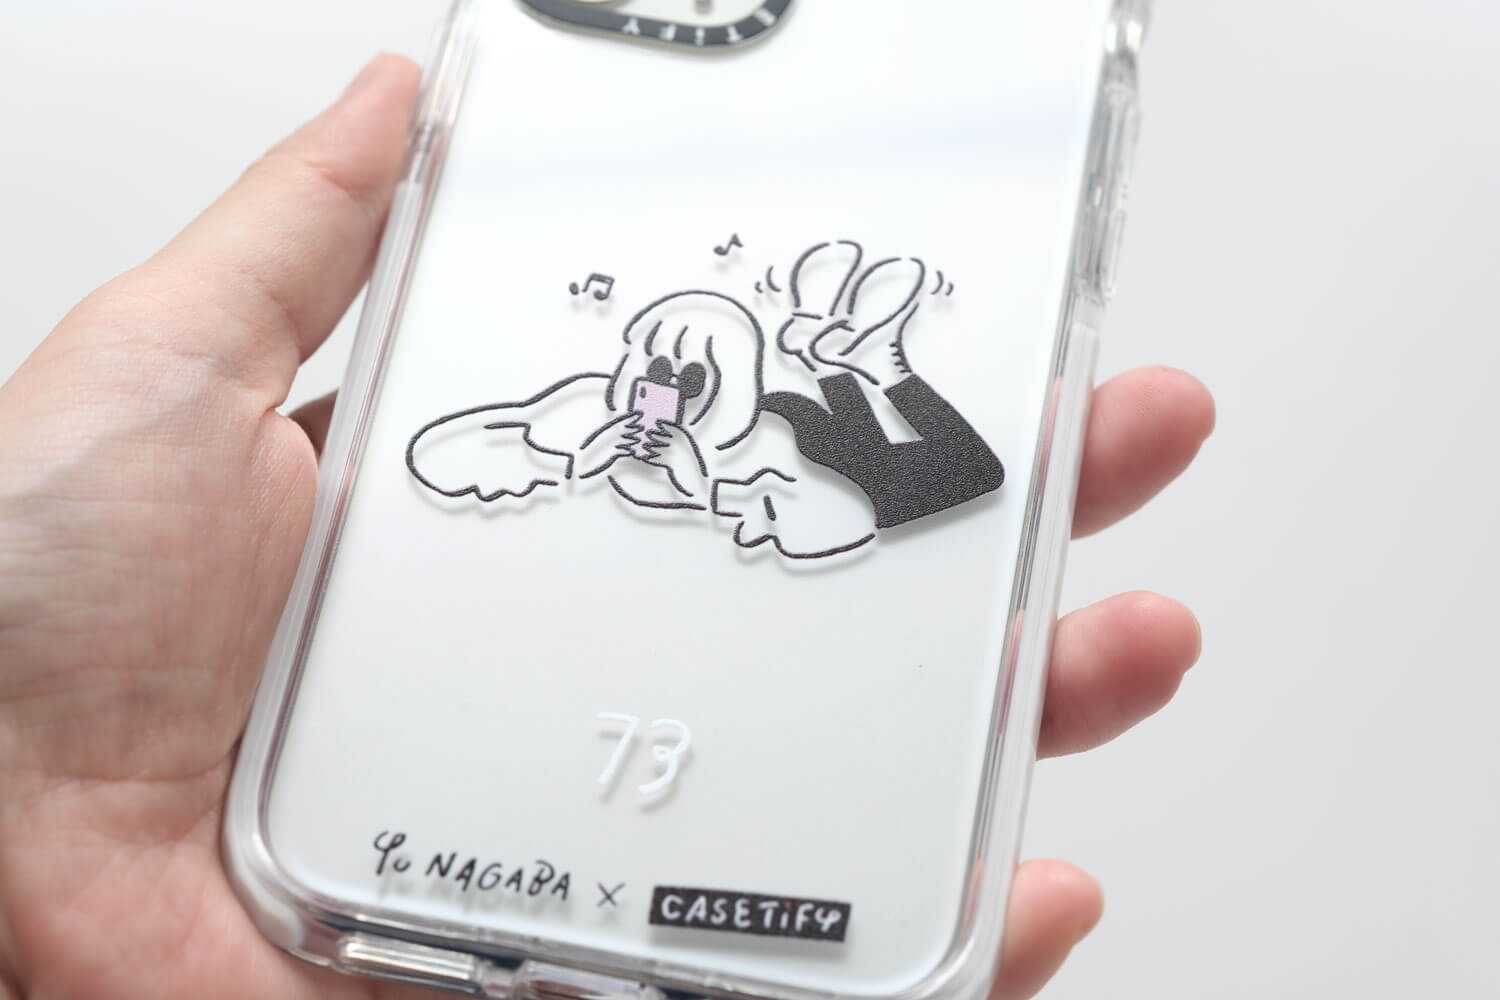 Yu Nagaba（長場雄）×CasetifyコラボのiPhoneケースを取り付けたイラスト部分